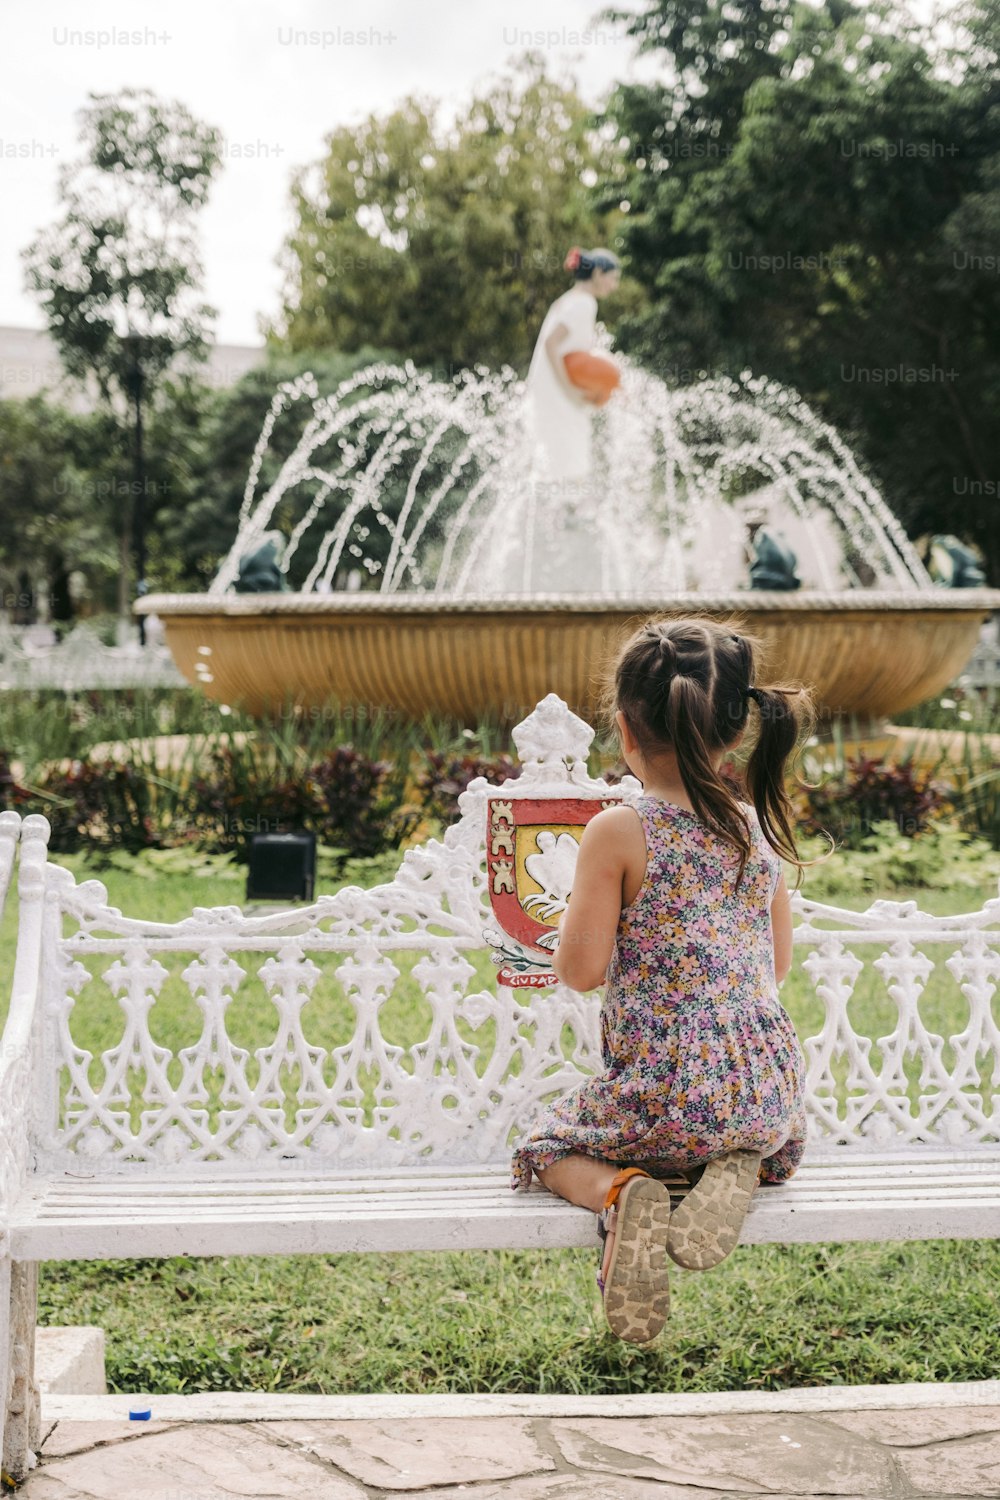 Une petite fille assise sur un banc devant une fontaine